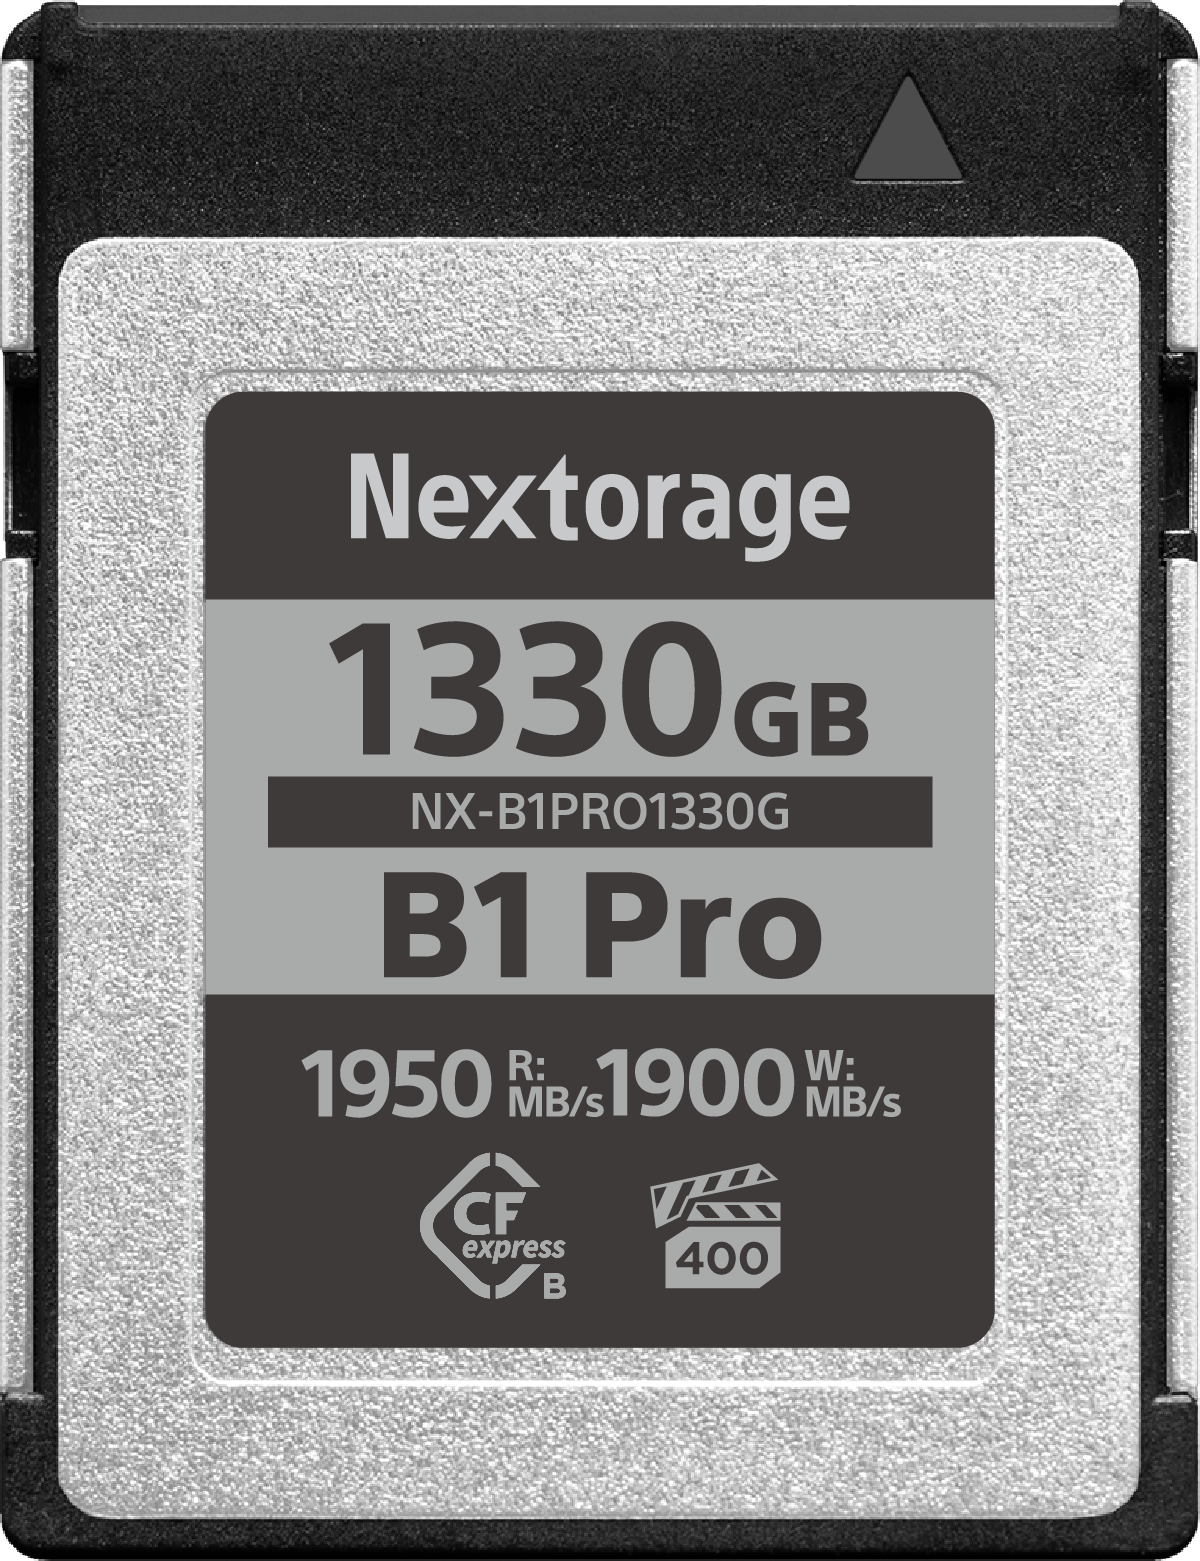 NX-B1PRO Series｜CFexpress™ Type B Memory Card VPG400 – Nextorage